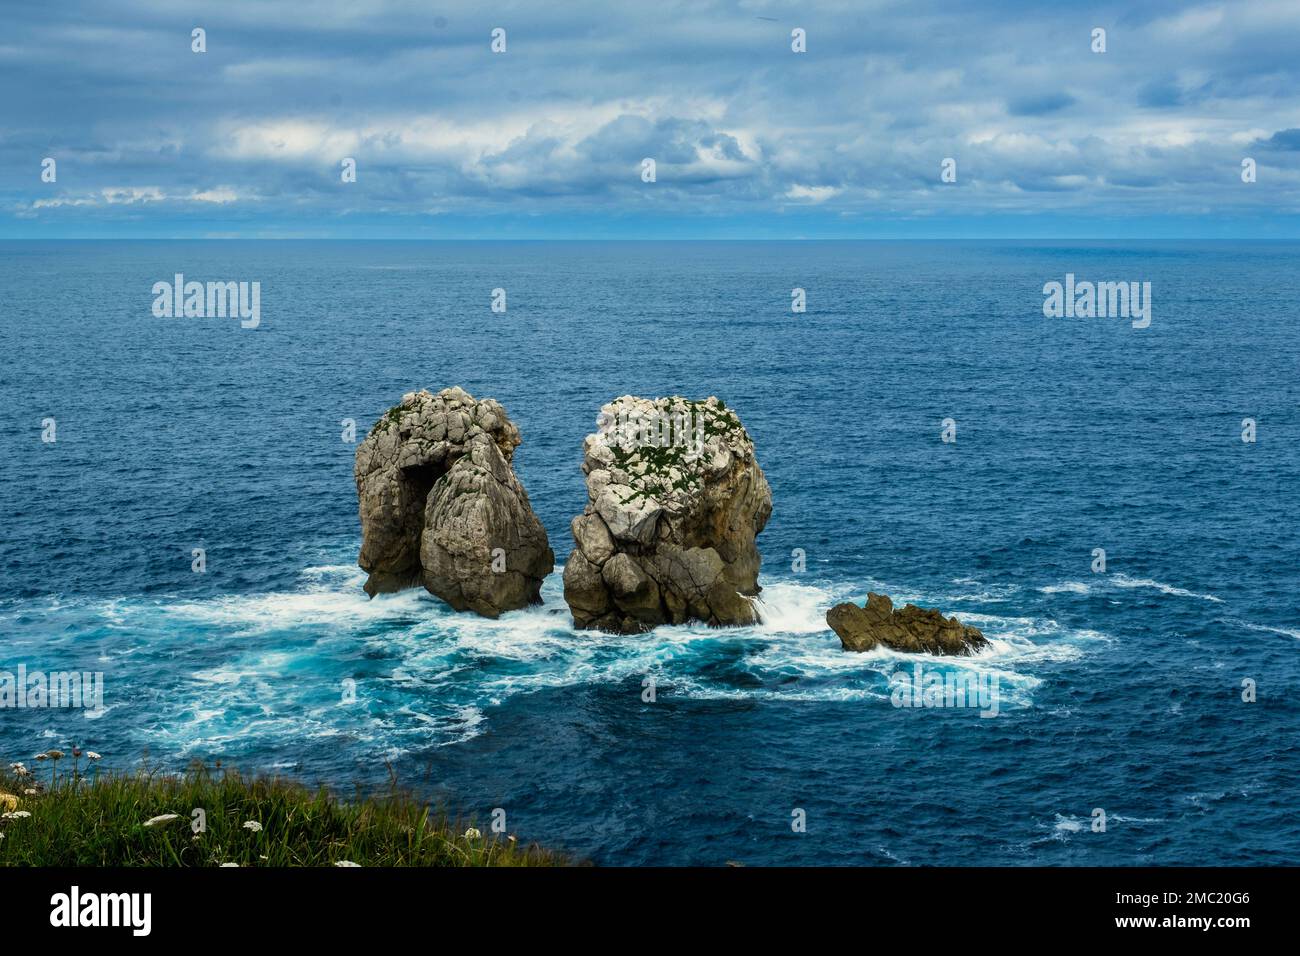 Porta di mare o canto del Diablo nella Costa spezzata (Costa Quebrada), Cantabria, Spagna Foto Stock